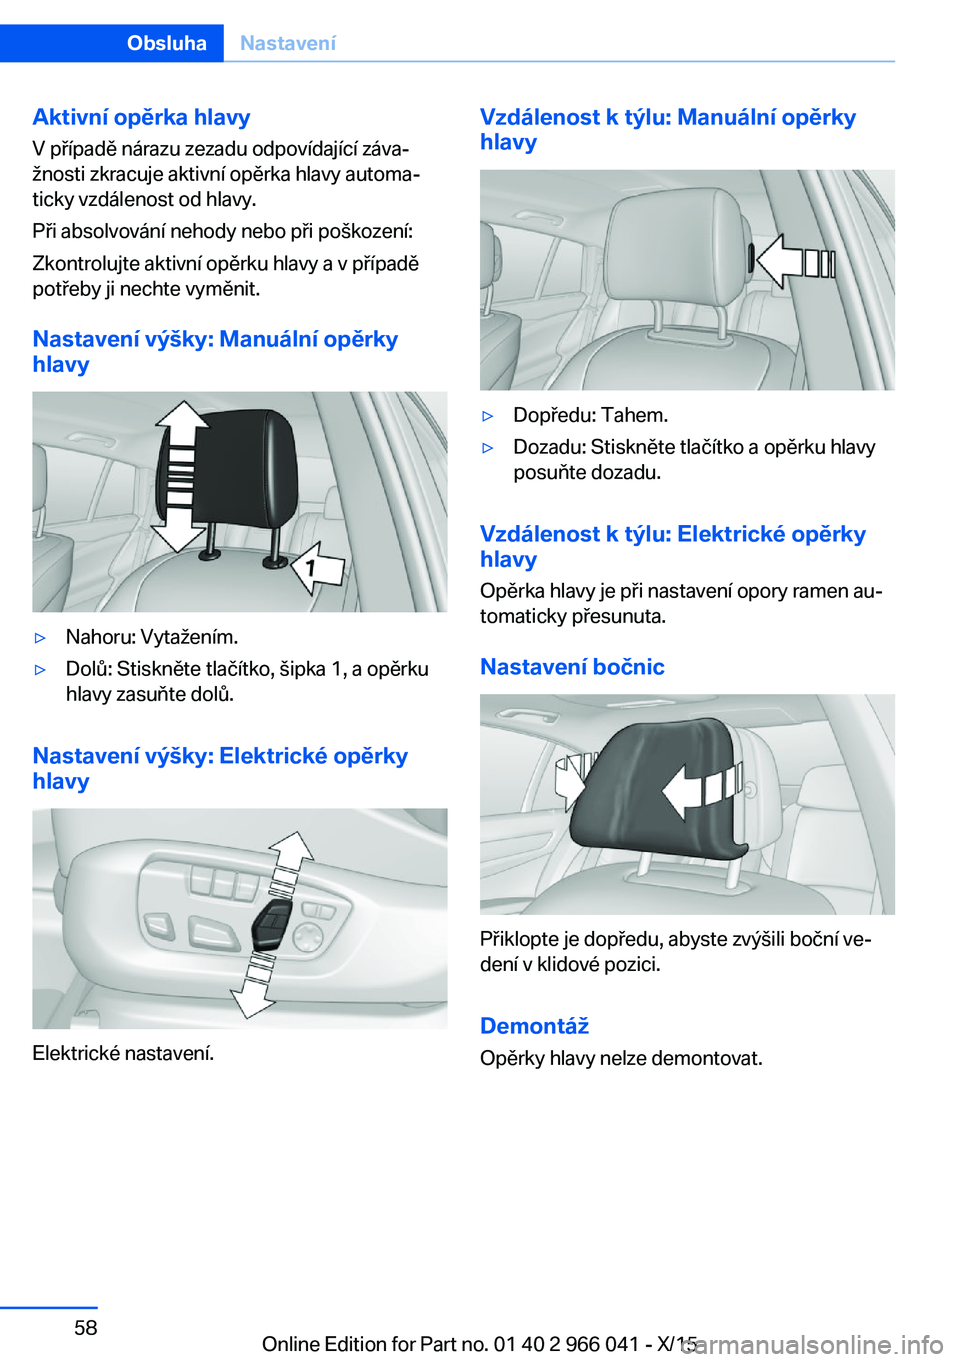 BMW X6 2016  Návod na použití (in Czech) Aktivní opěrka hlavy
V případě nárazu zezadu odpovídající záva‐
žnosti zkracuje aktivní opěrka hlavy automa‐
ticky vzdálenost od hlavy.
Při absolvování nehody nebo při poškozen�